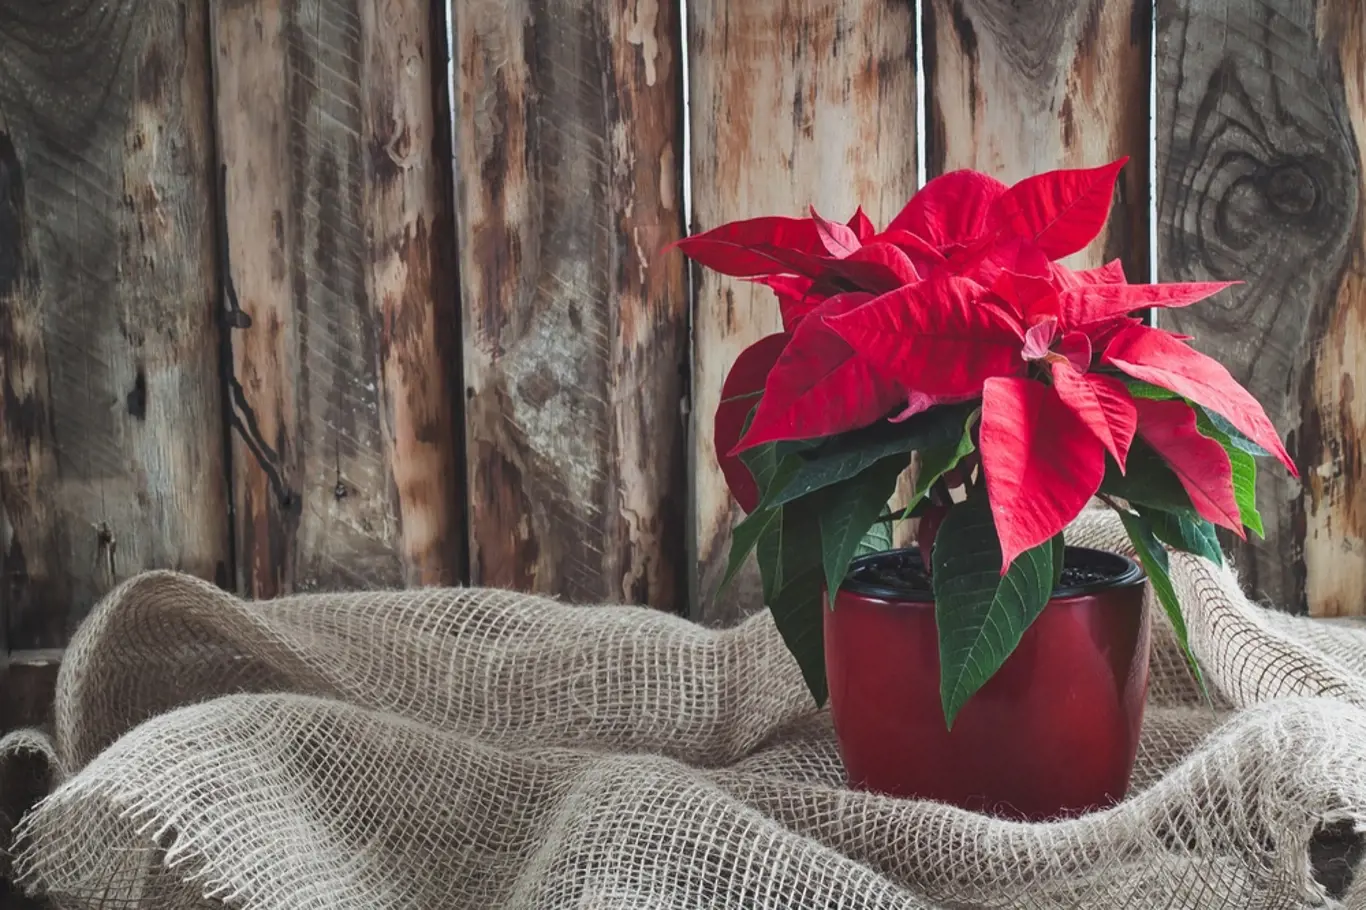 Při správné péči může vánoční hvězda zdobit váš byt po celý rok